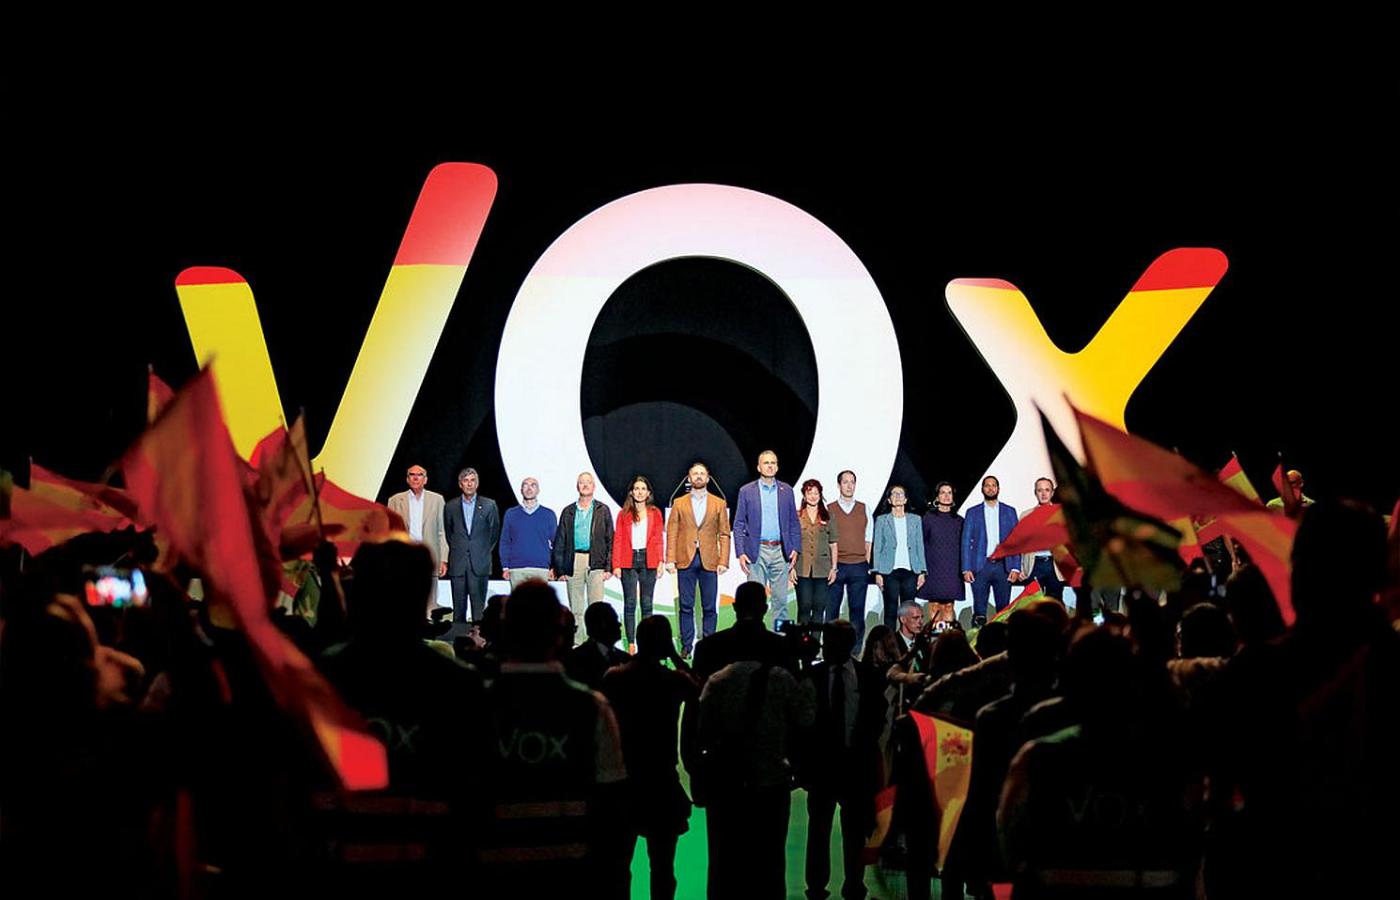 Działacze skrajnie prawicowego ugrupowania Vox, czyli Głos, na kongresie w popularnej madryckiej hali sportowej Vistalegre.